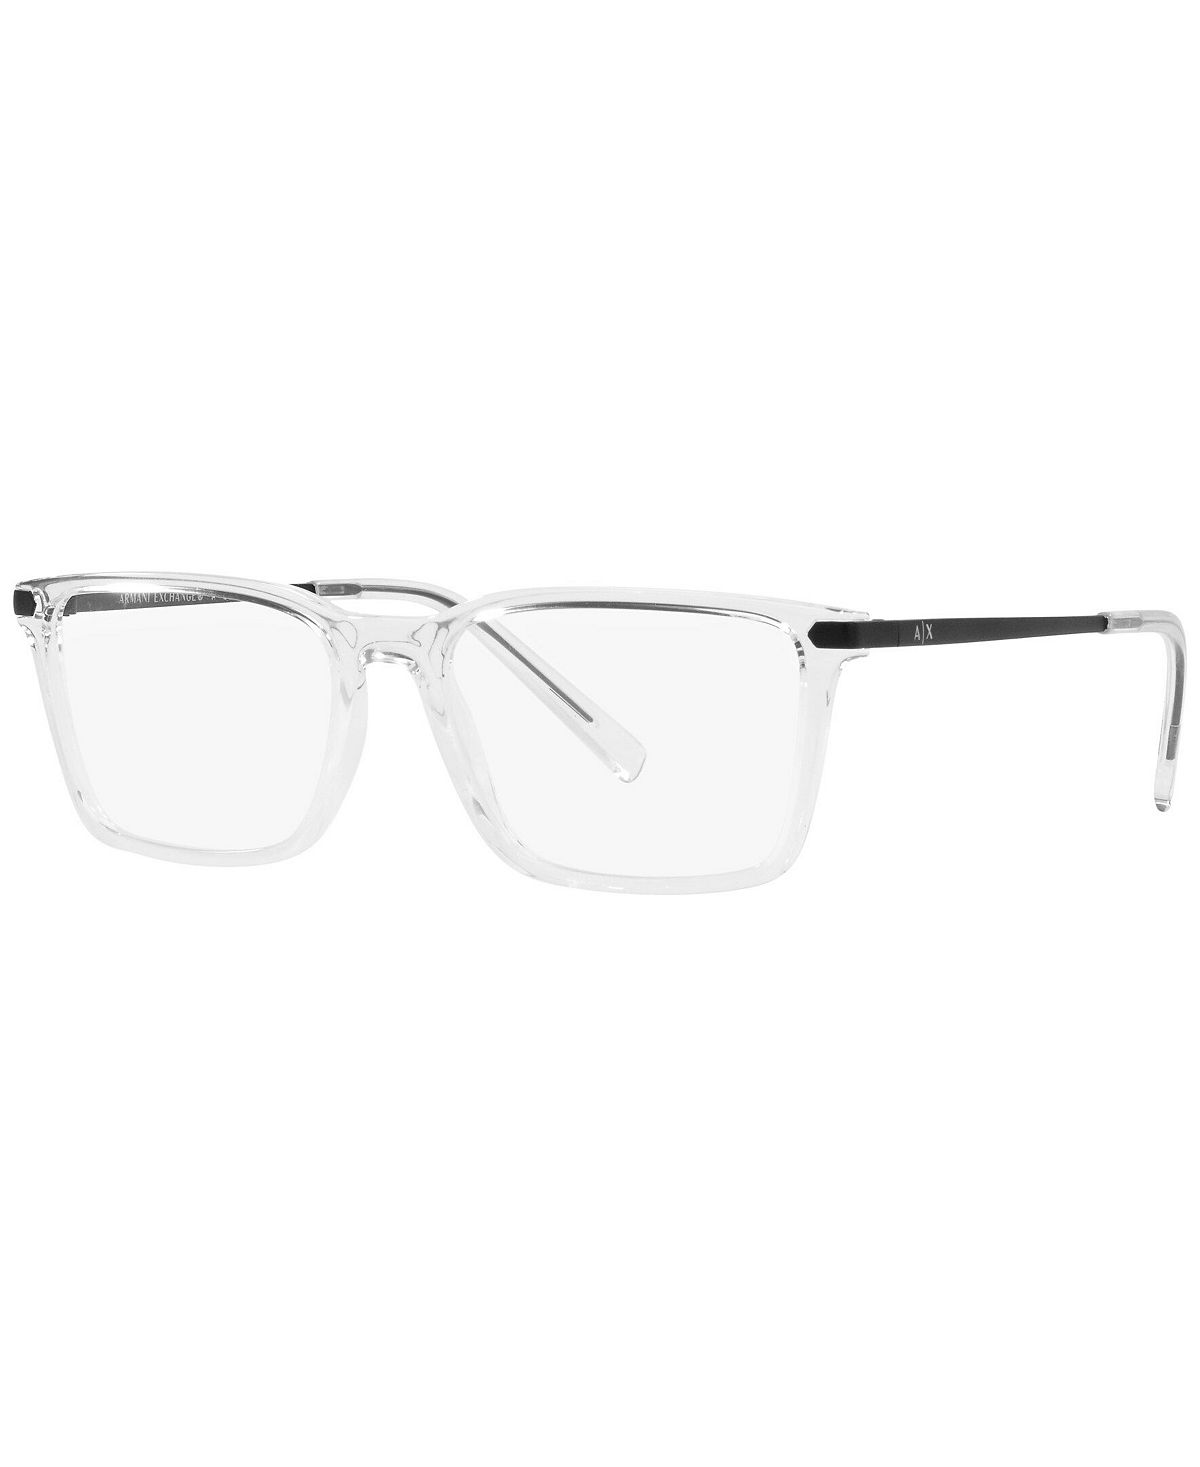 Мужские прямоугольные очки, AX3077 Armani Exchange